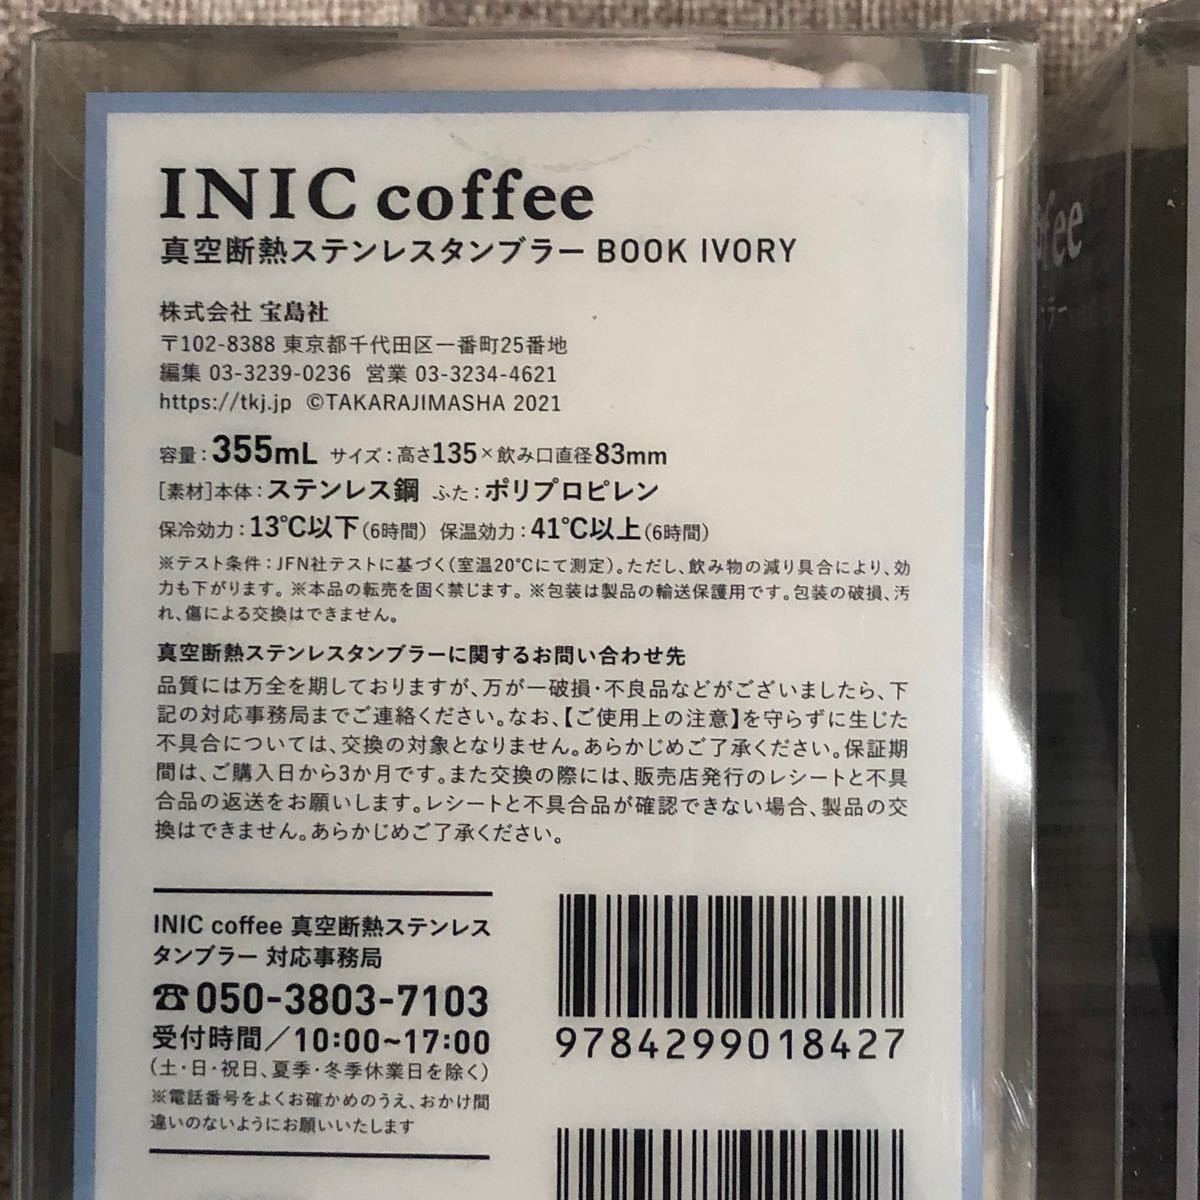 INIC coffee 真空断熱ステンレスタンブラー 2色セット